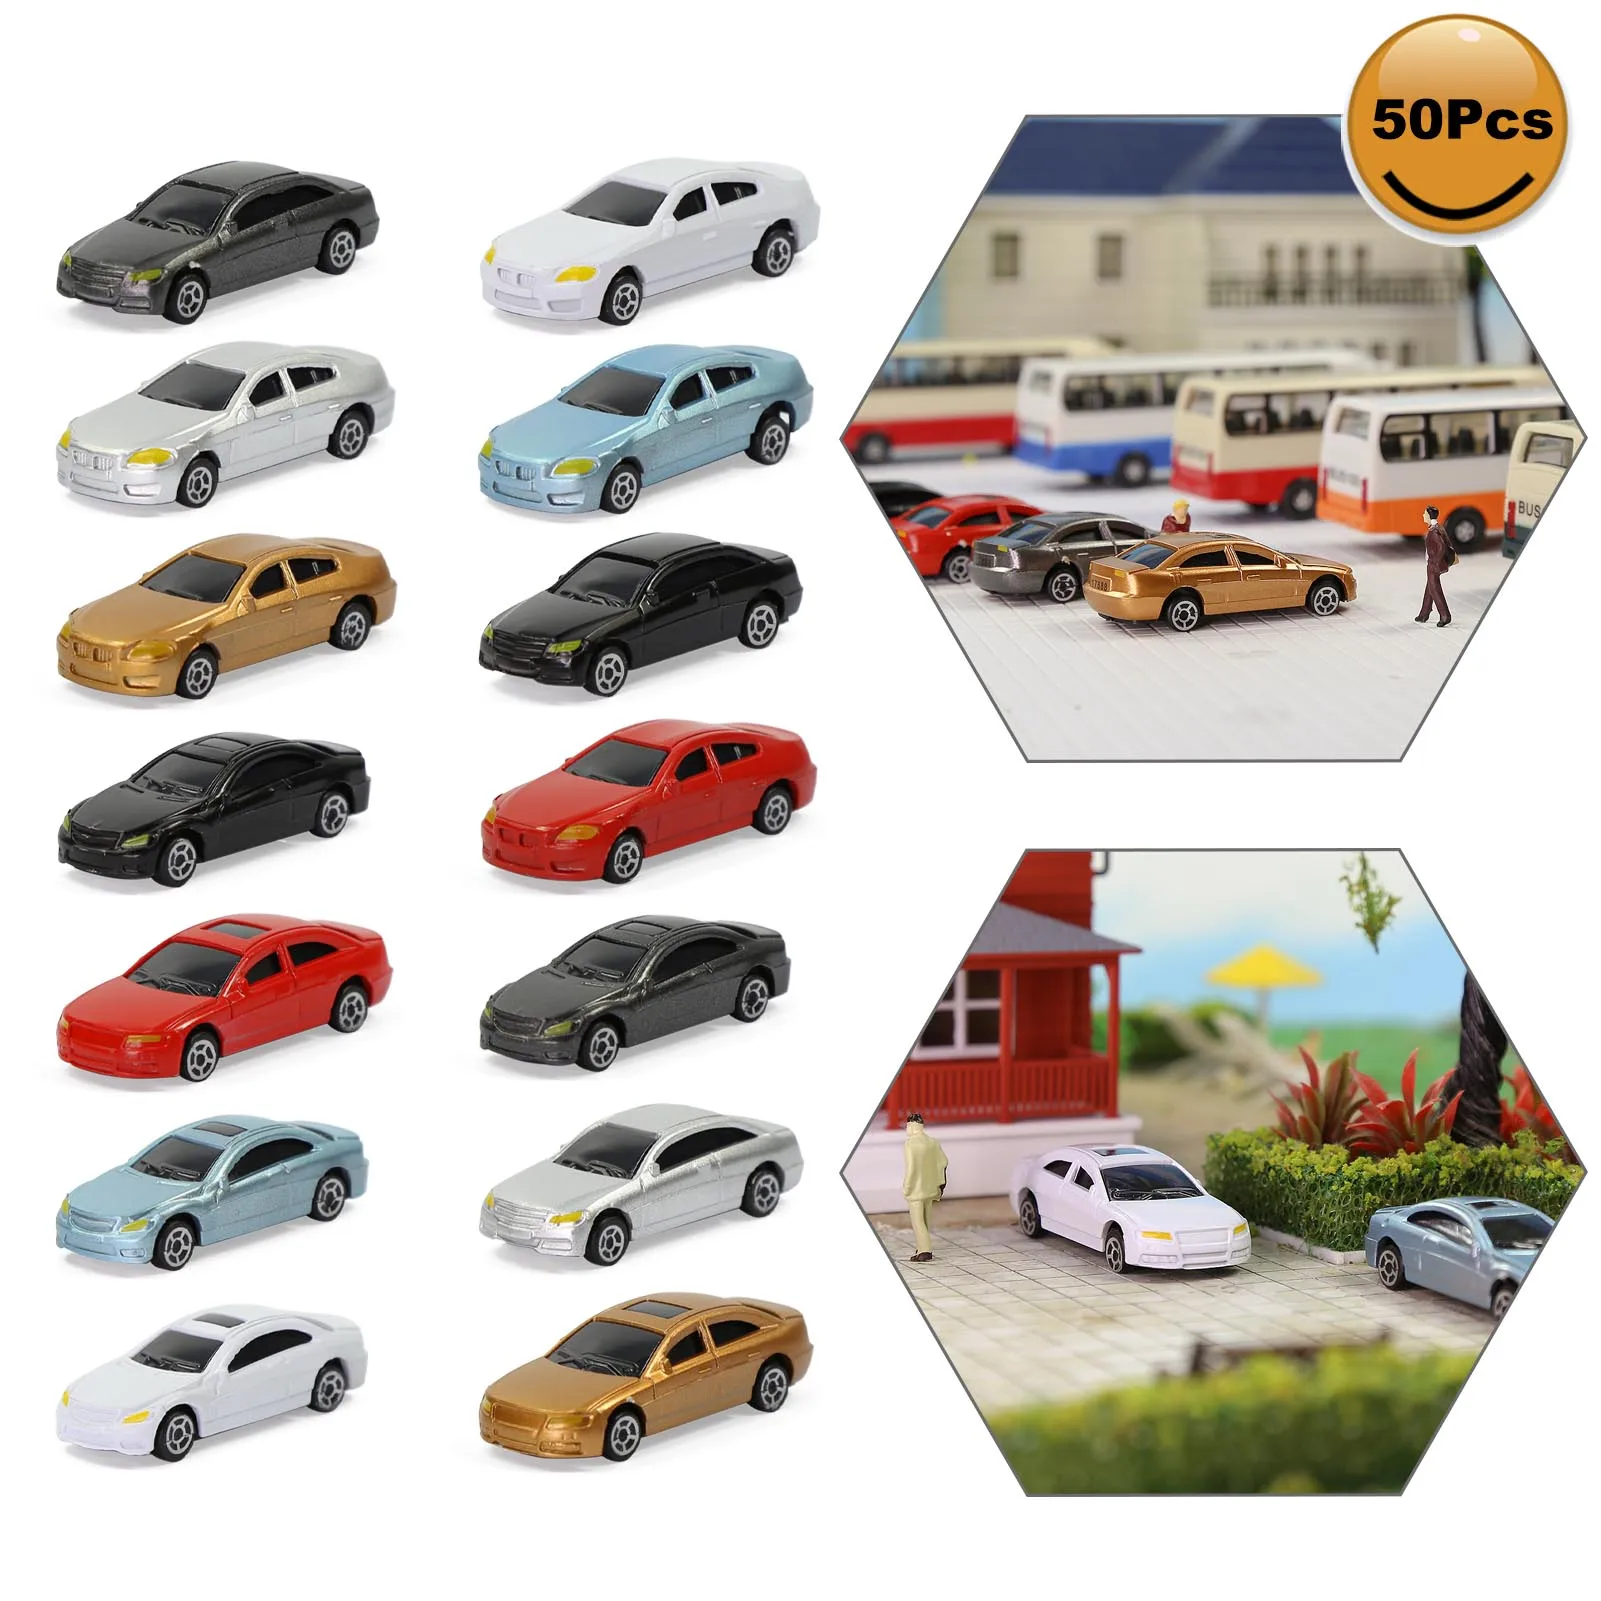 20Pcs HO Scale Model Mini Vehicle Car Toy 1:87 Train Architecture Landscape 